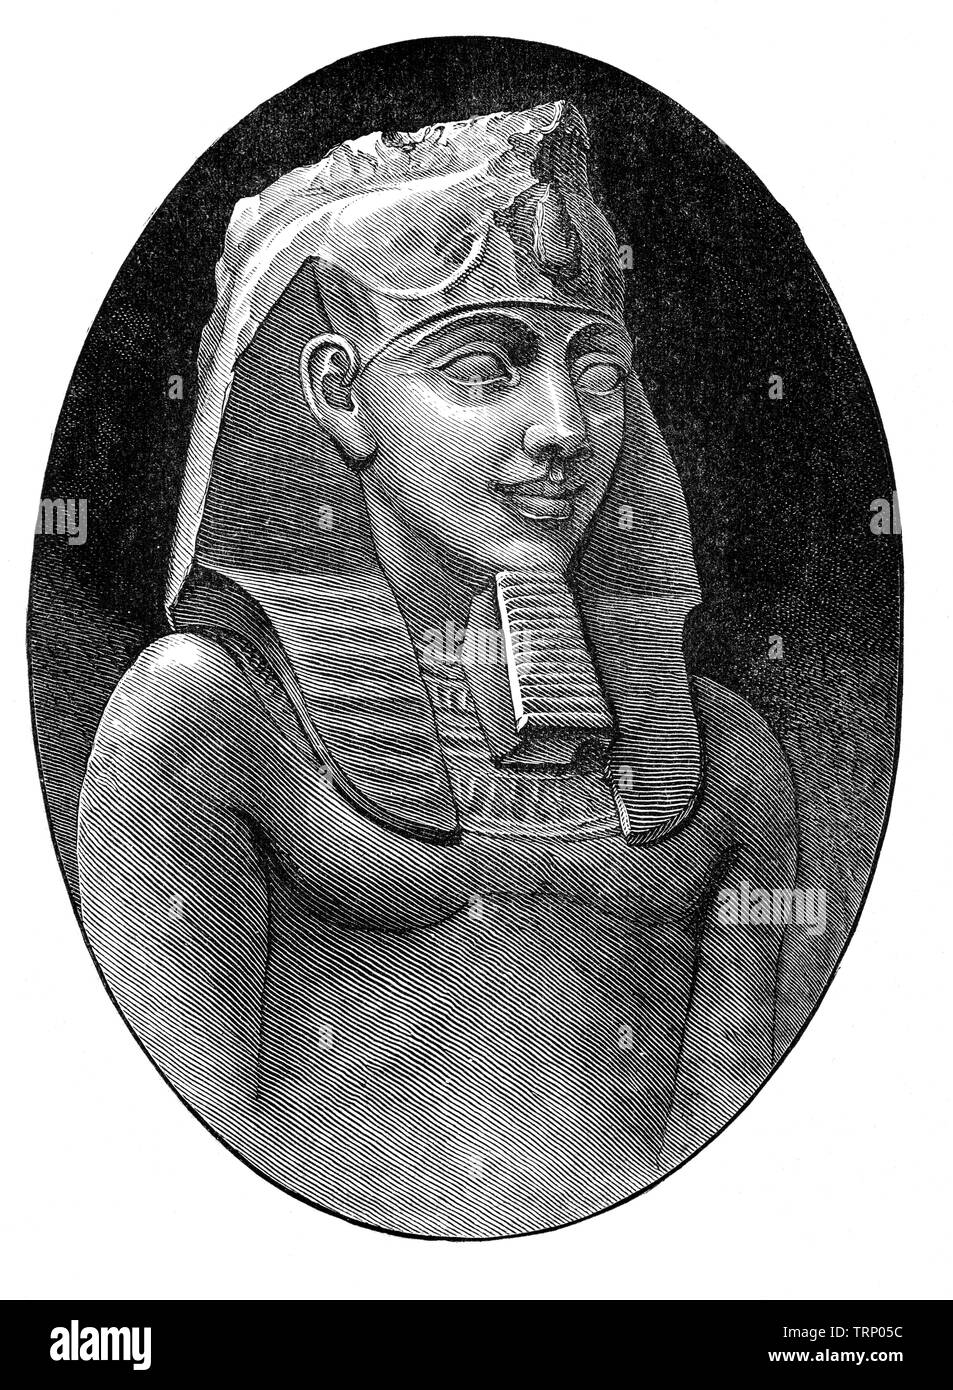 Ramsès II, également connu sous le nom de Ramsès le Grand, est le troisième pharaon de la xixe dynastie égyptienne. Né c. 1303 avant J.-C., il régna de 1279-1213, et est souvent considéré comme le plus grand, le plus célèbre, et le plus puissant pharaon du Nouvel Empire. Ses successeurs et, plus tard, les Égyptiens l'appellent le "grand ancêtre". Banque D'Images